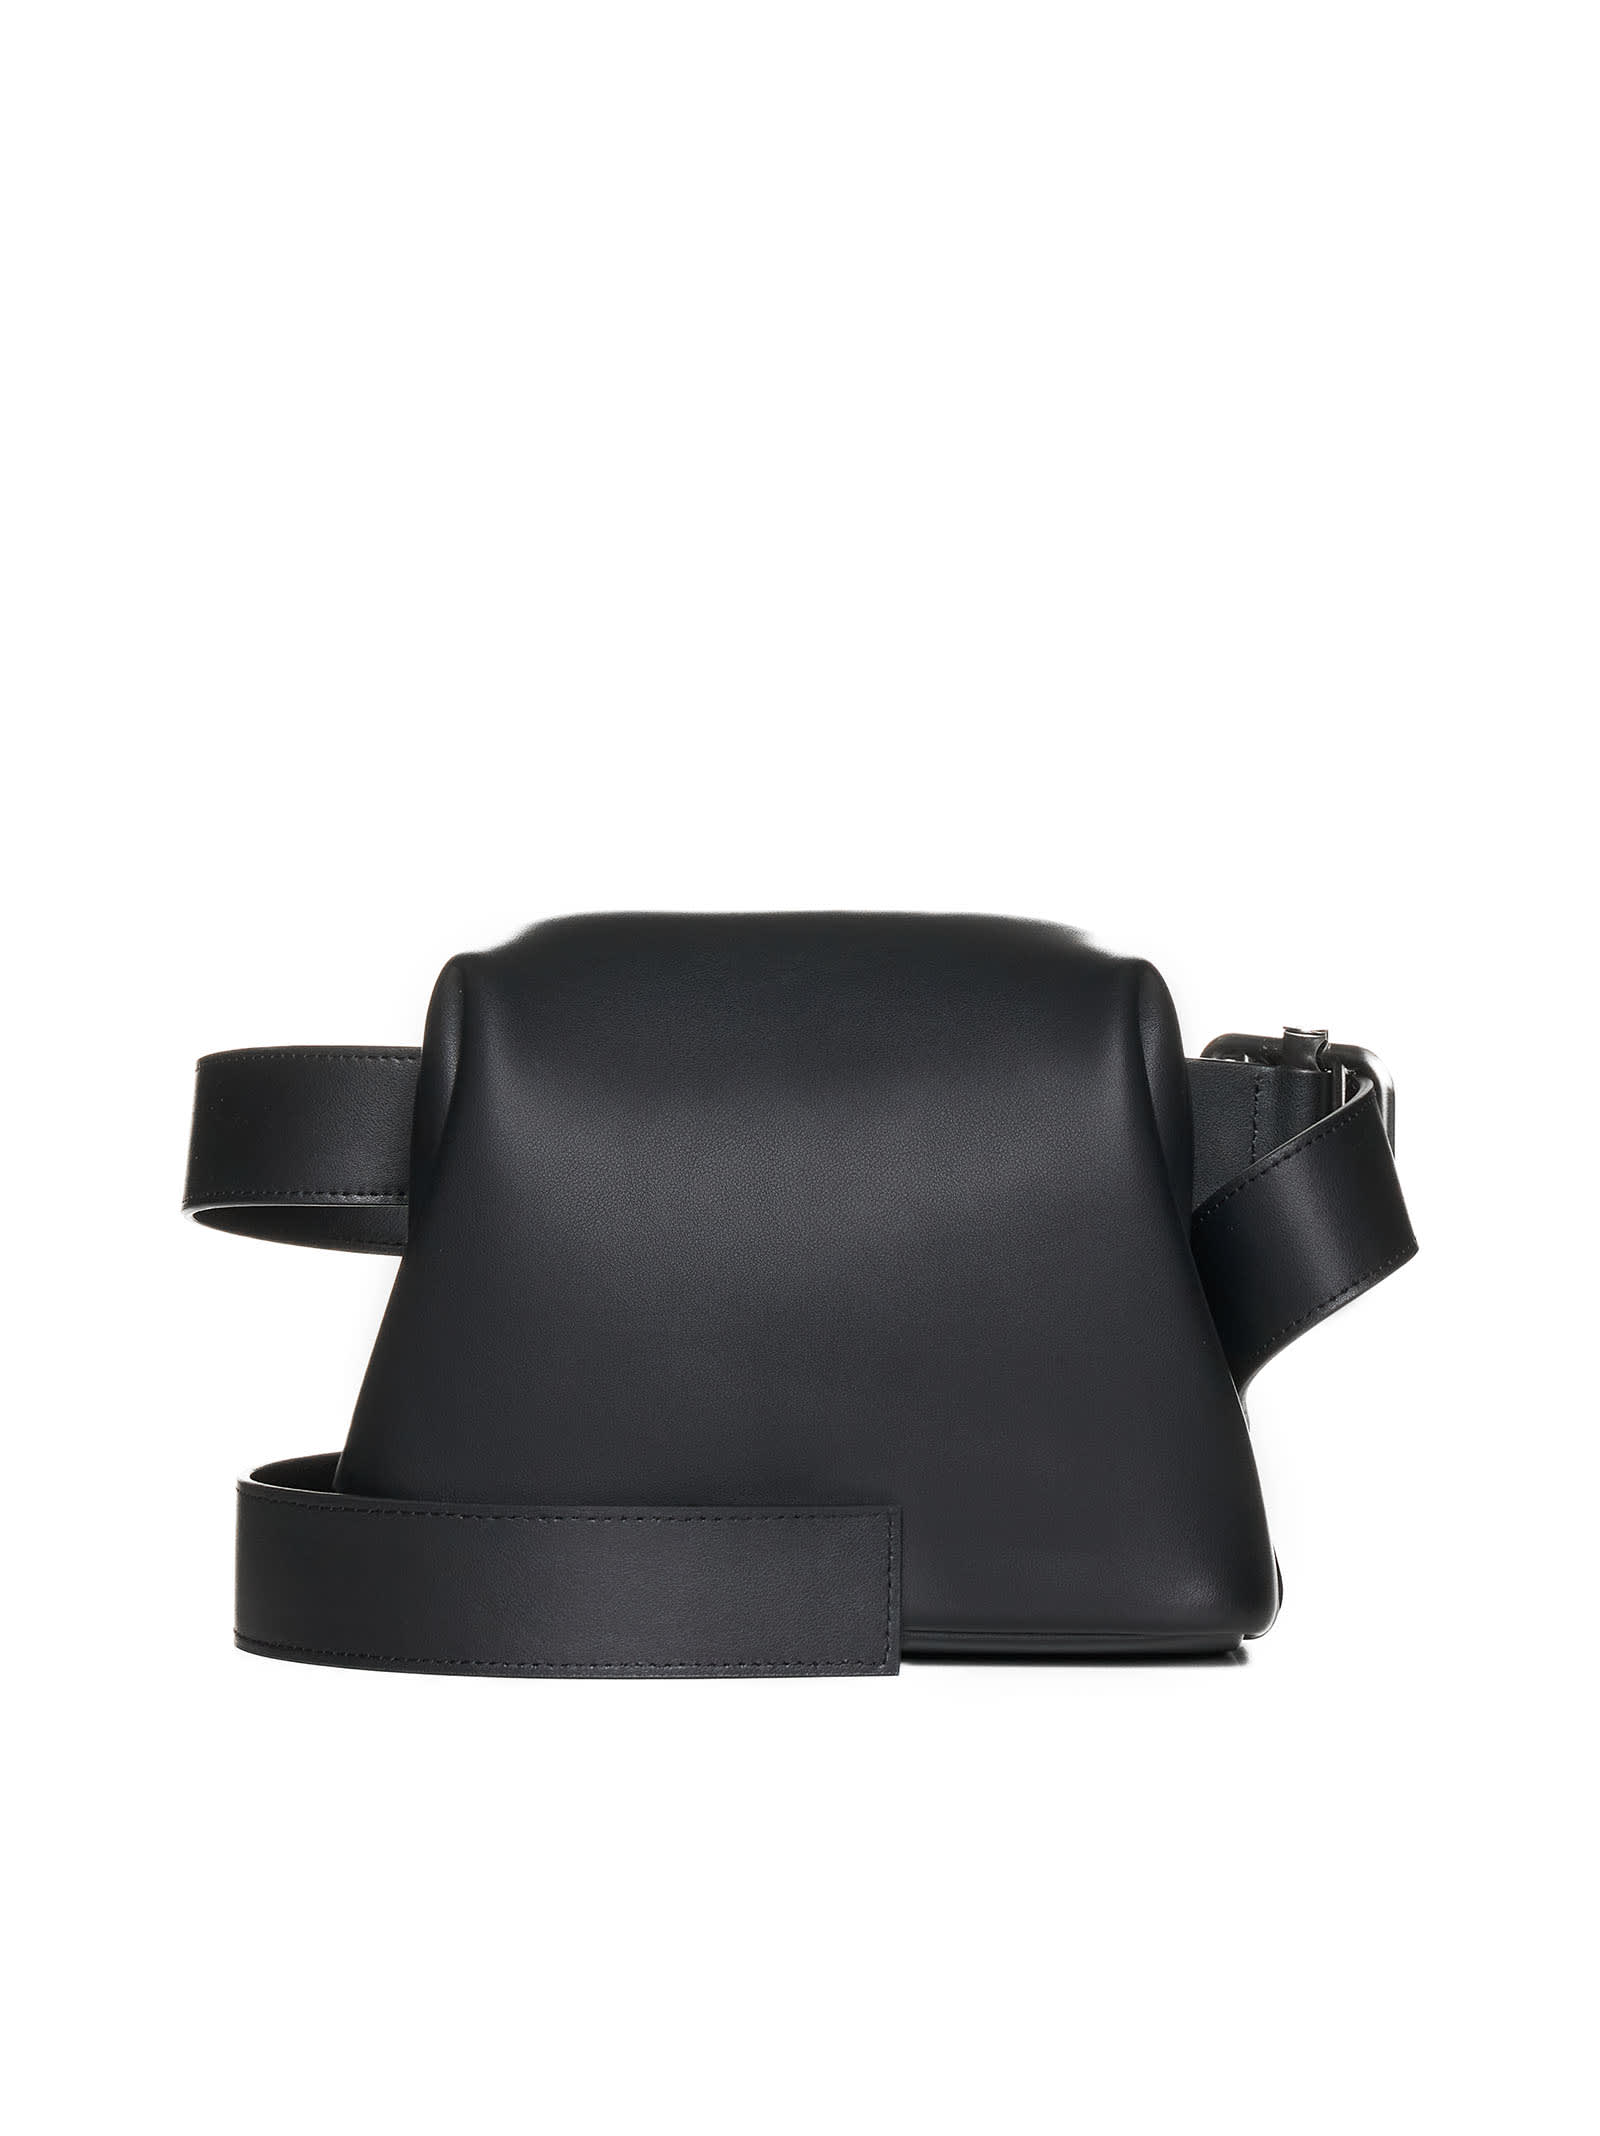 Osoi Shoulder Bag In Black